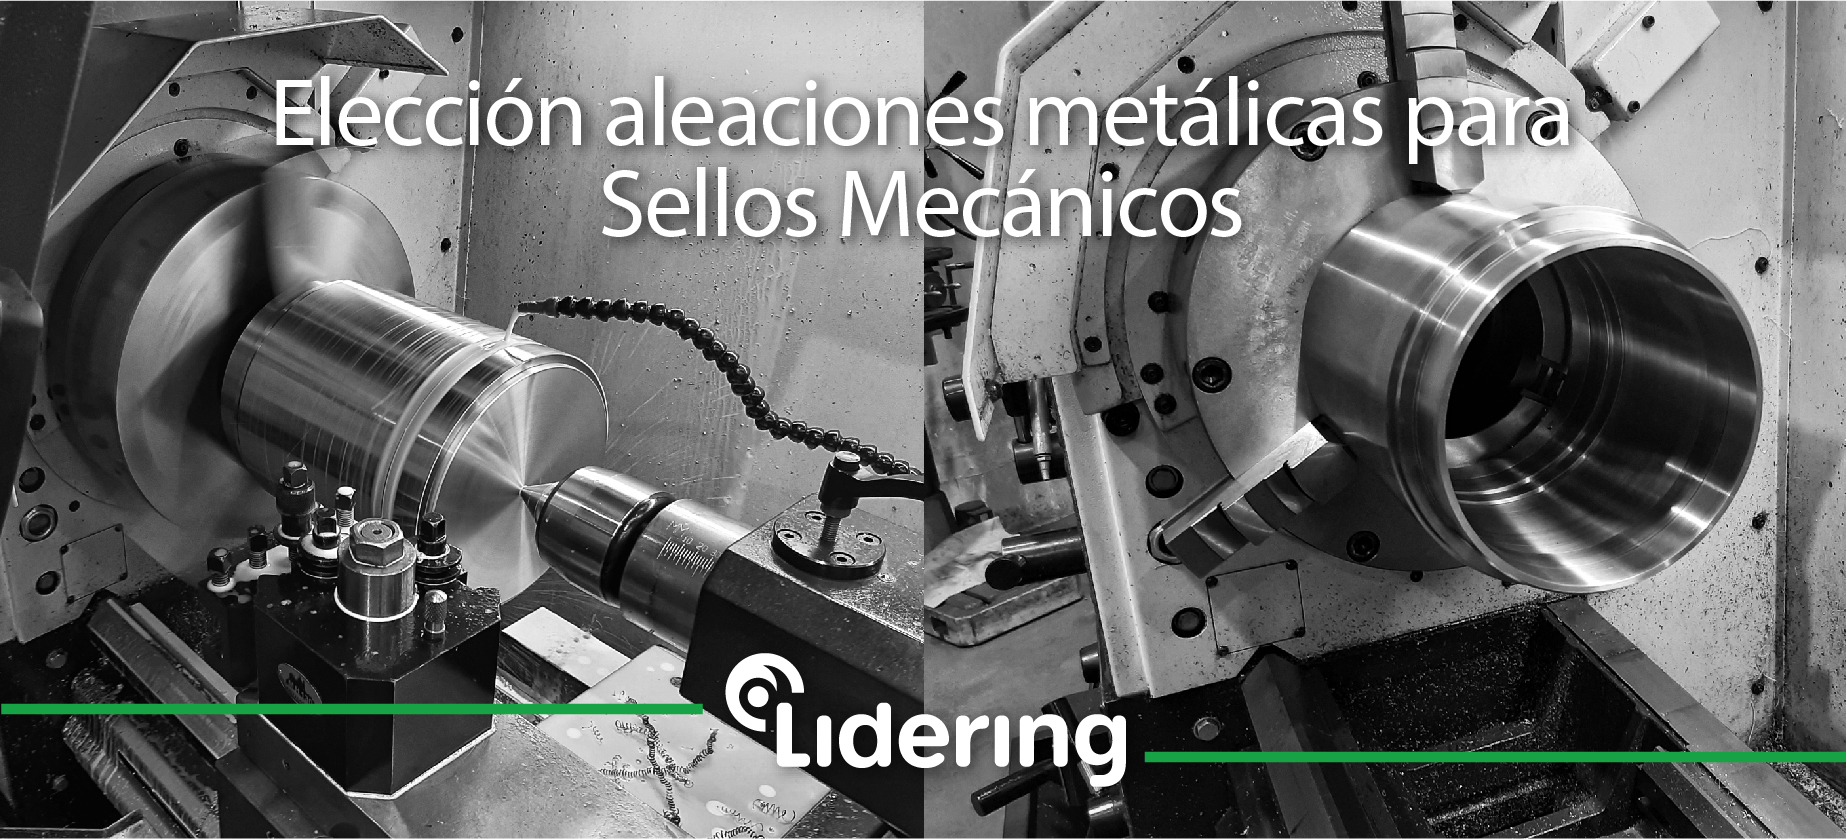 Elección aleaciones metálicas para Sellos Mecánicos Lidering